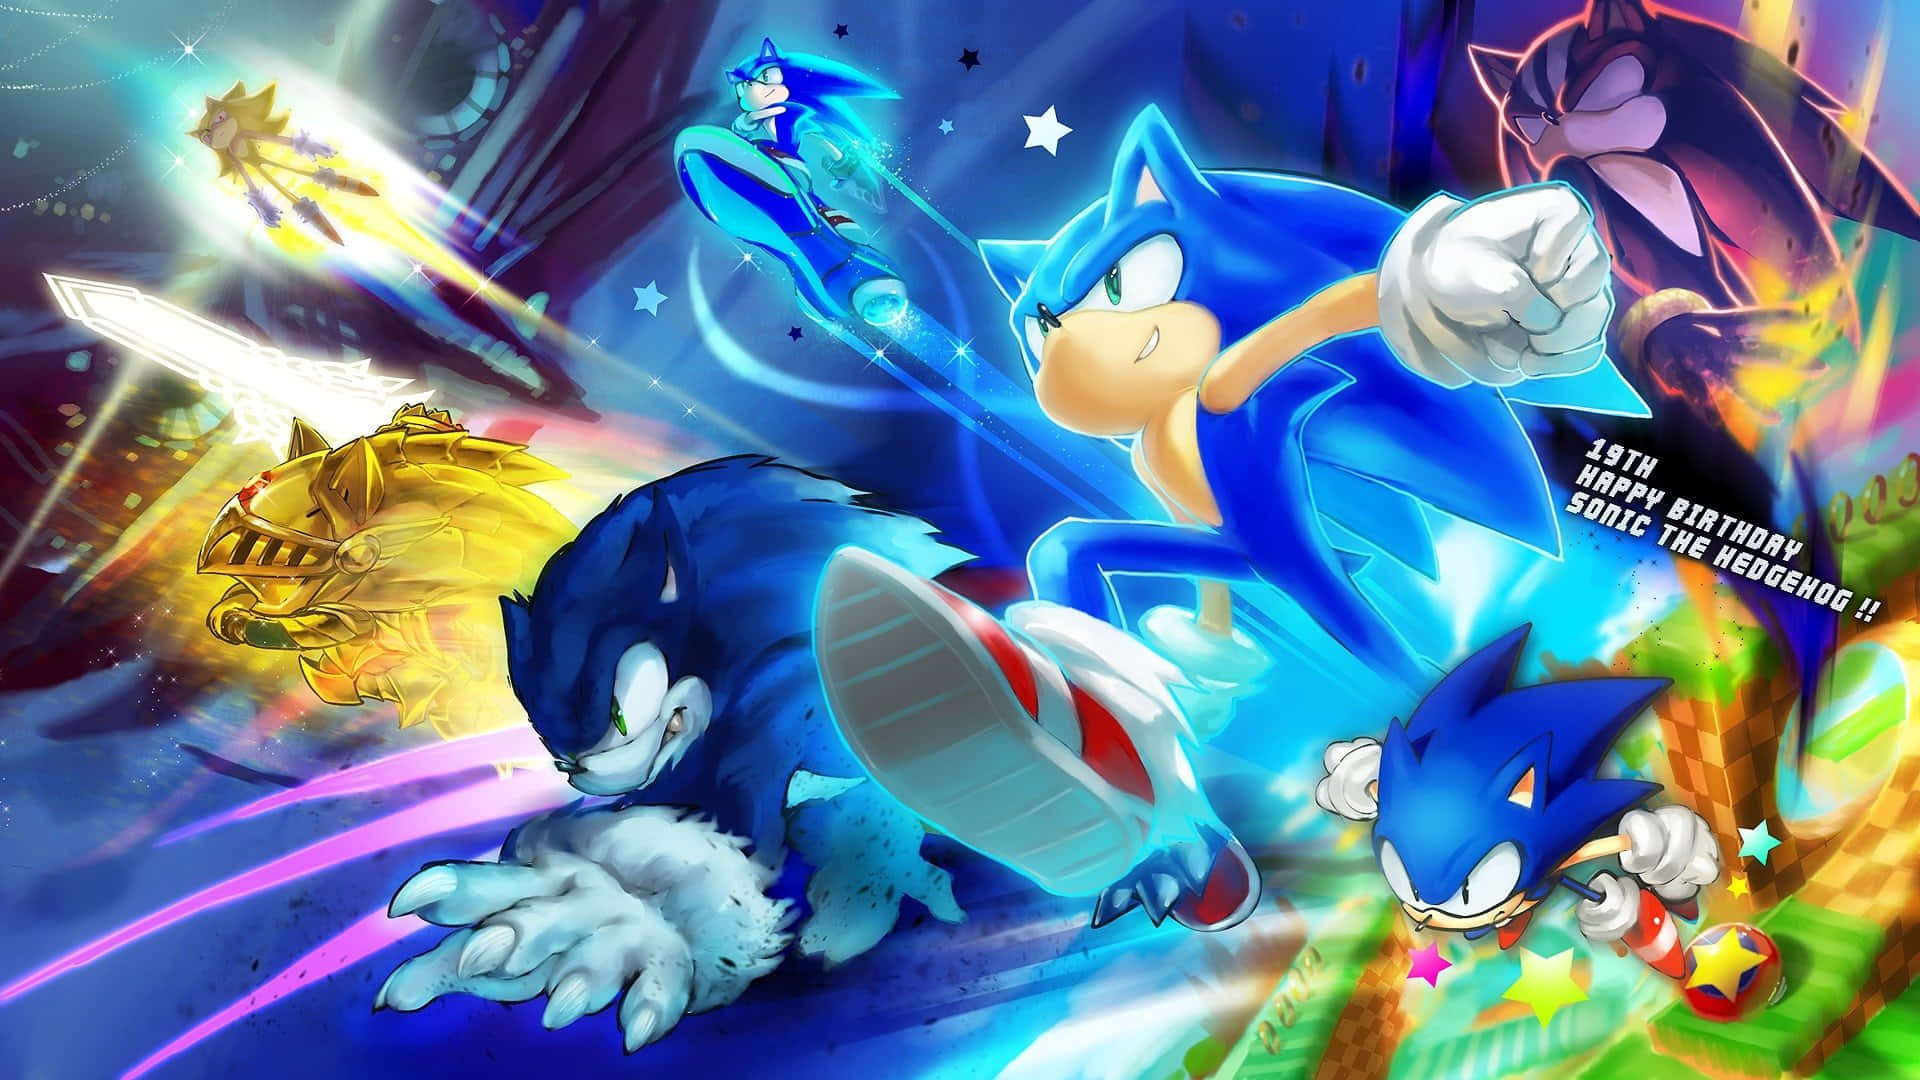 Sonic dashing at an incredible speed!